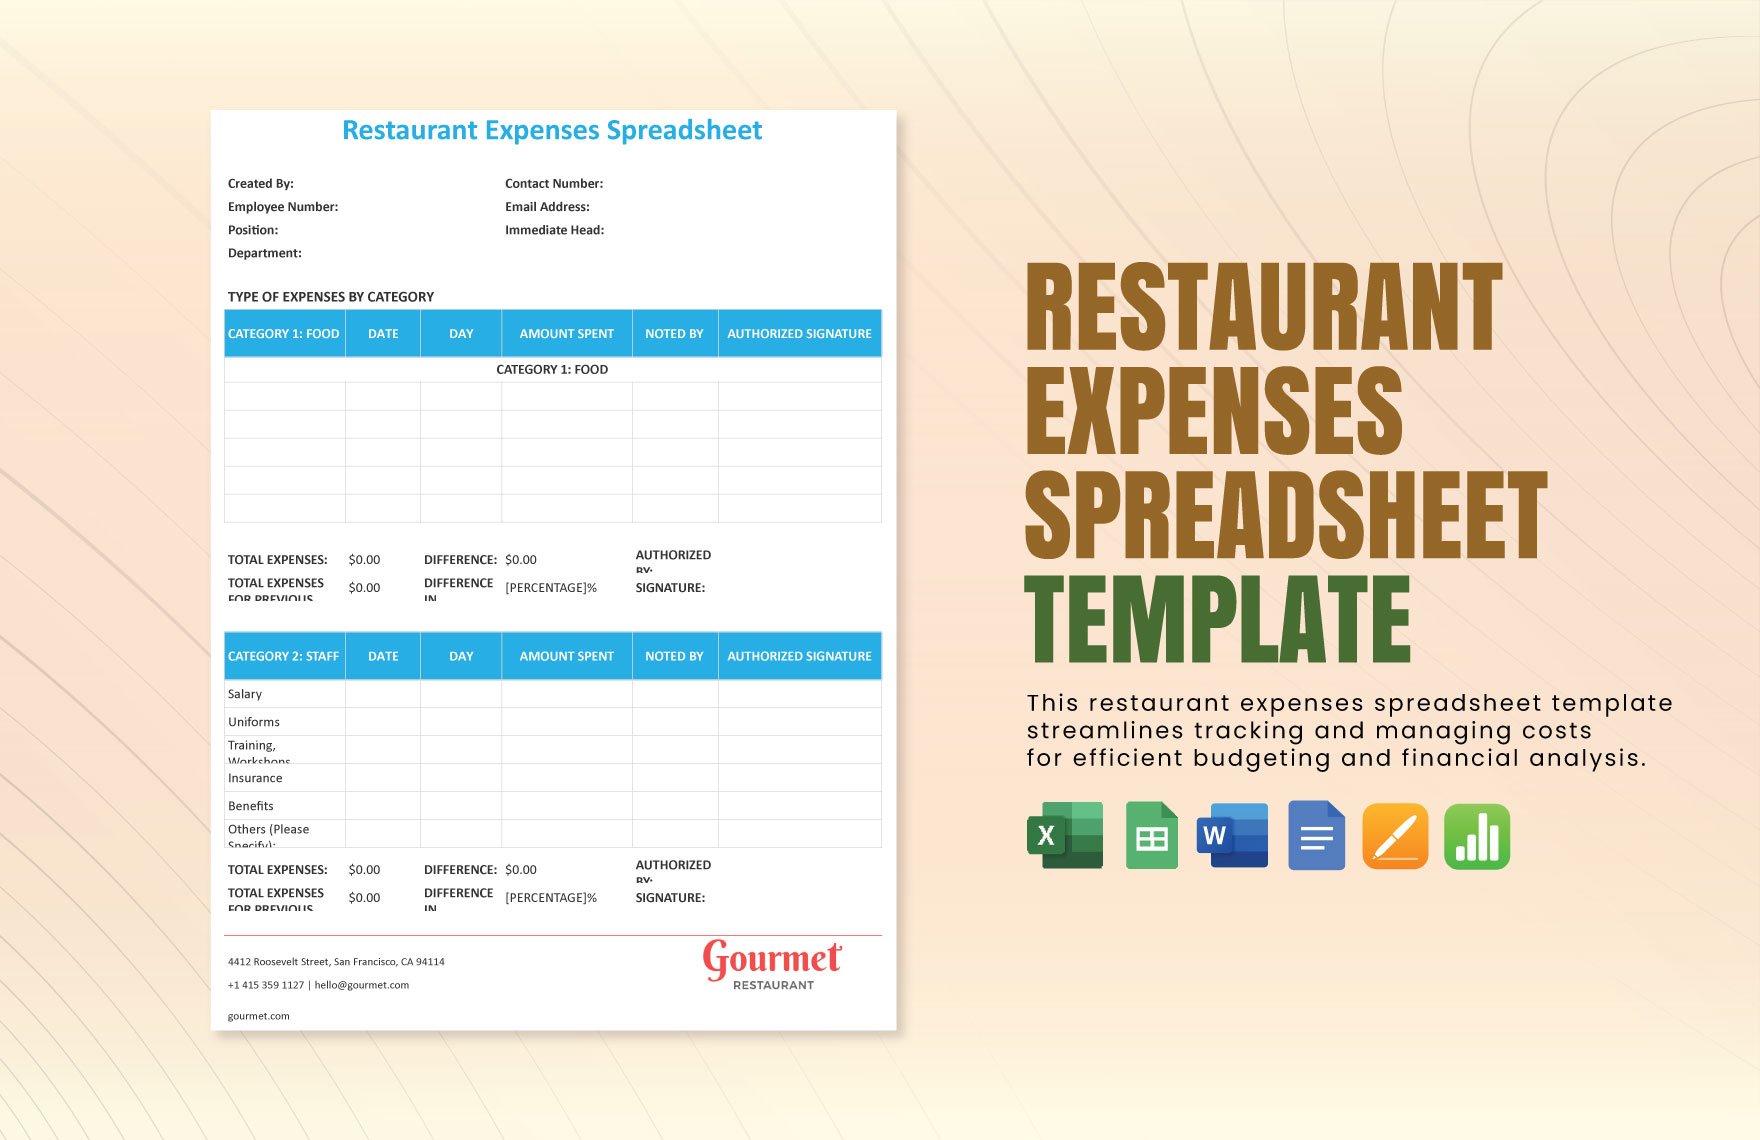 Restaurant Expenses Spreadsheet Template